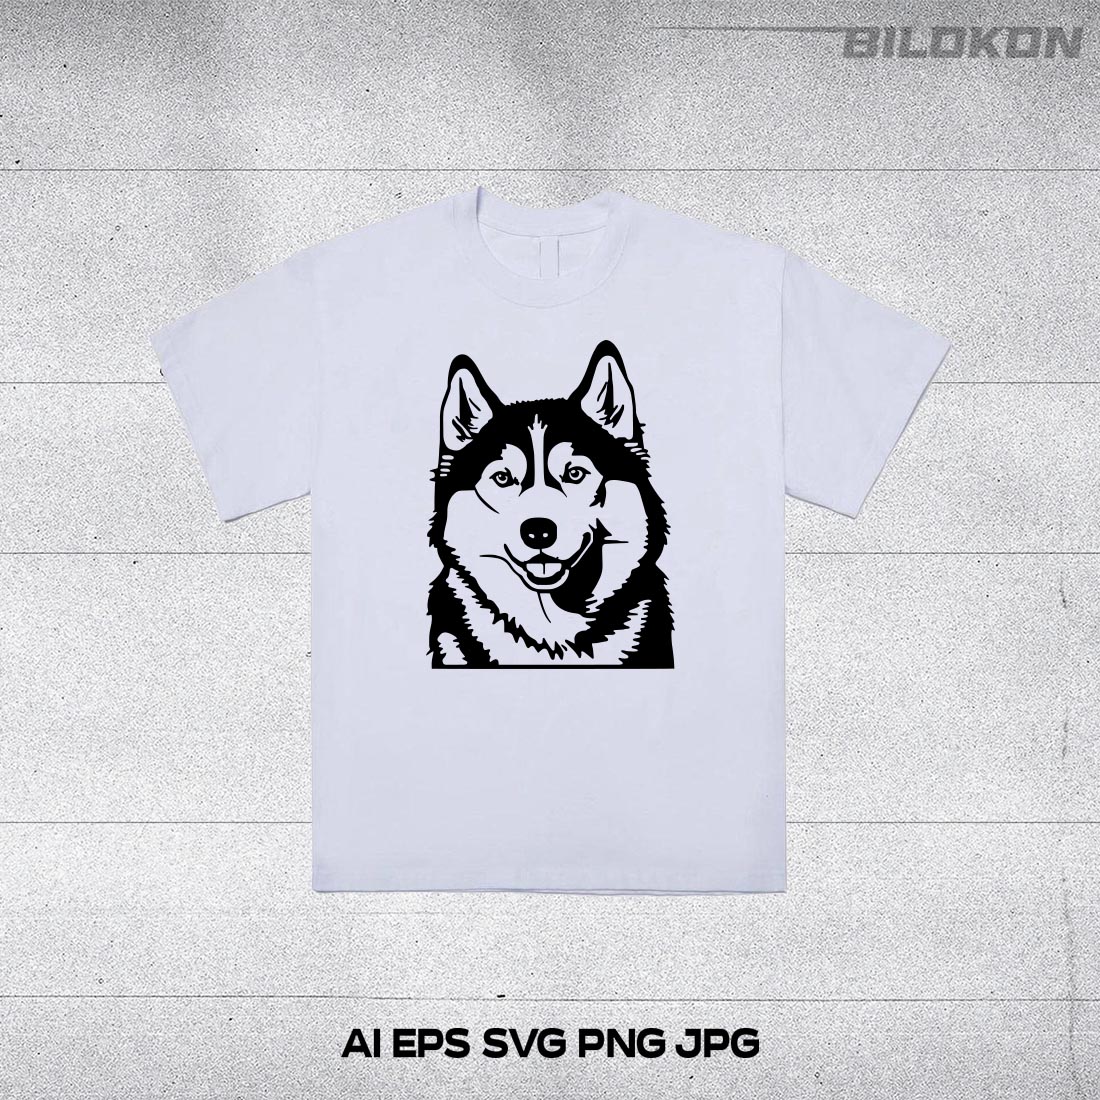 Husky dog head, SVG, Vector, Illustration, SVG Bundle preview image.